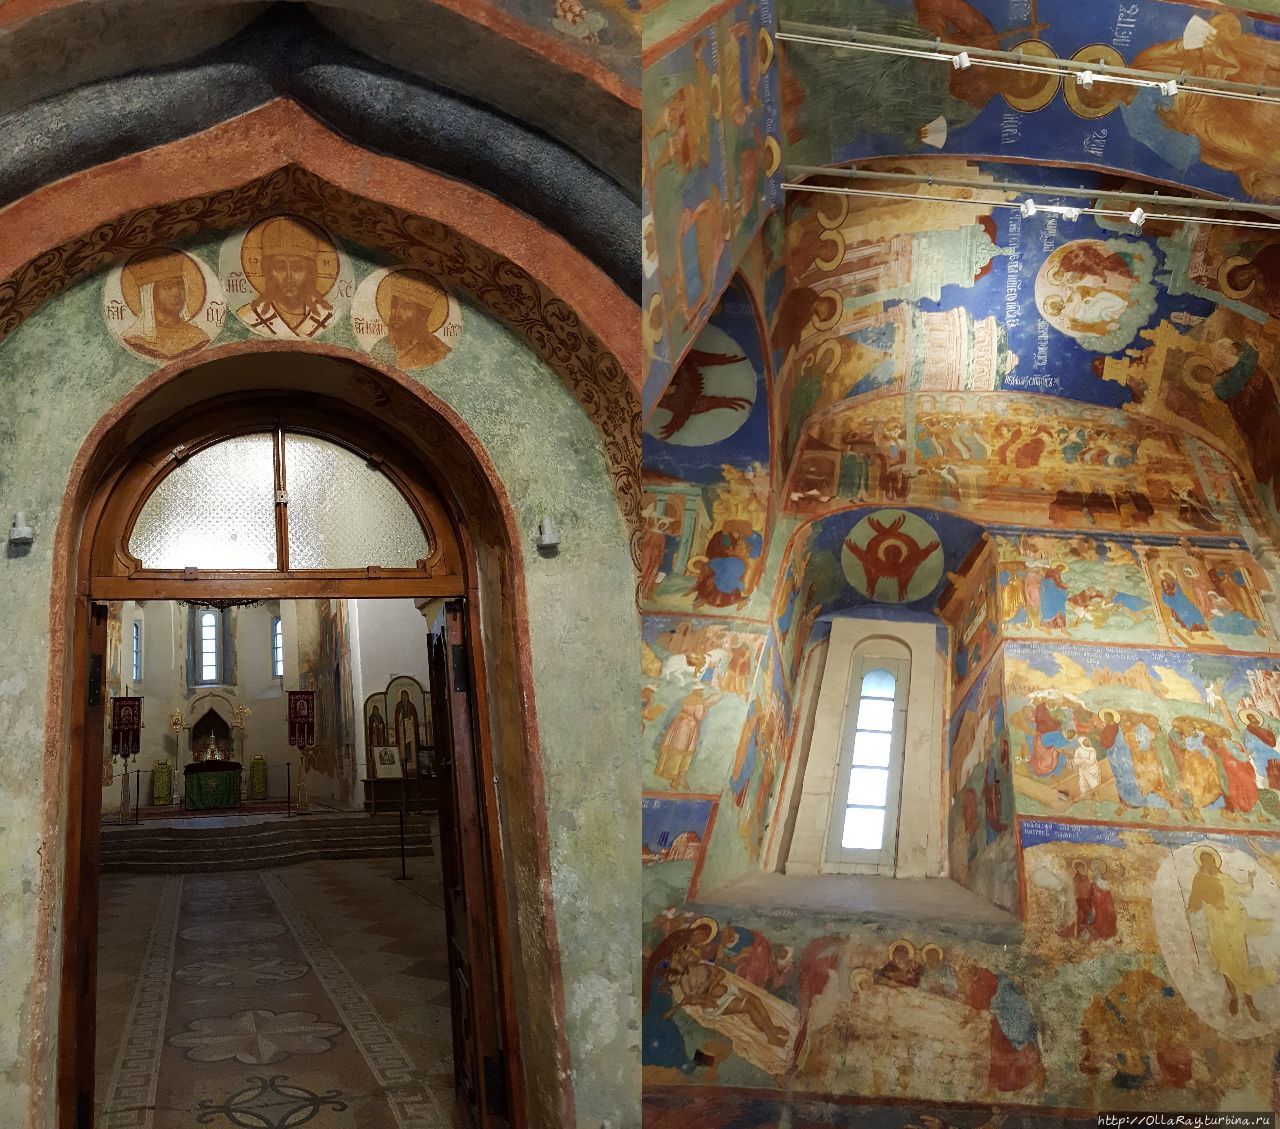 Интерьер собора. Фрески в нём  были выполнены первоначально в 17 веке. Суздаль, Россия